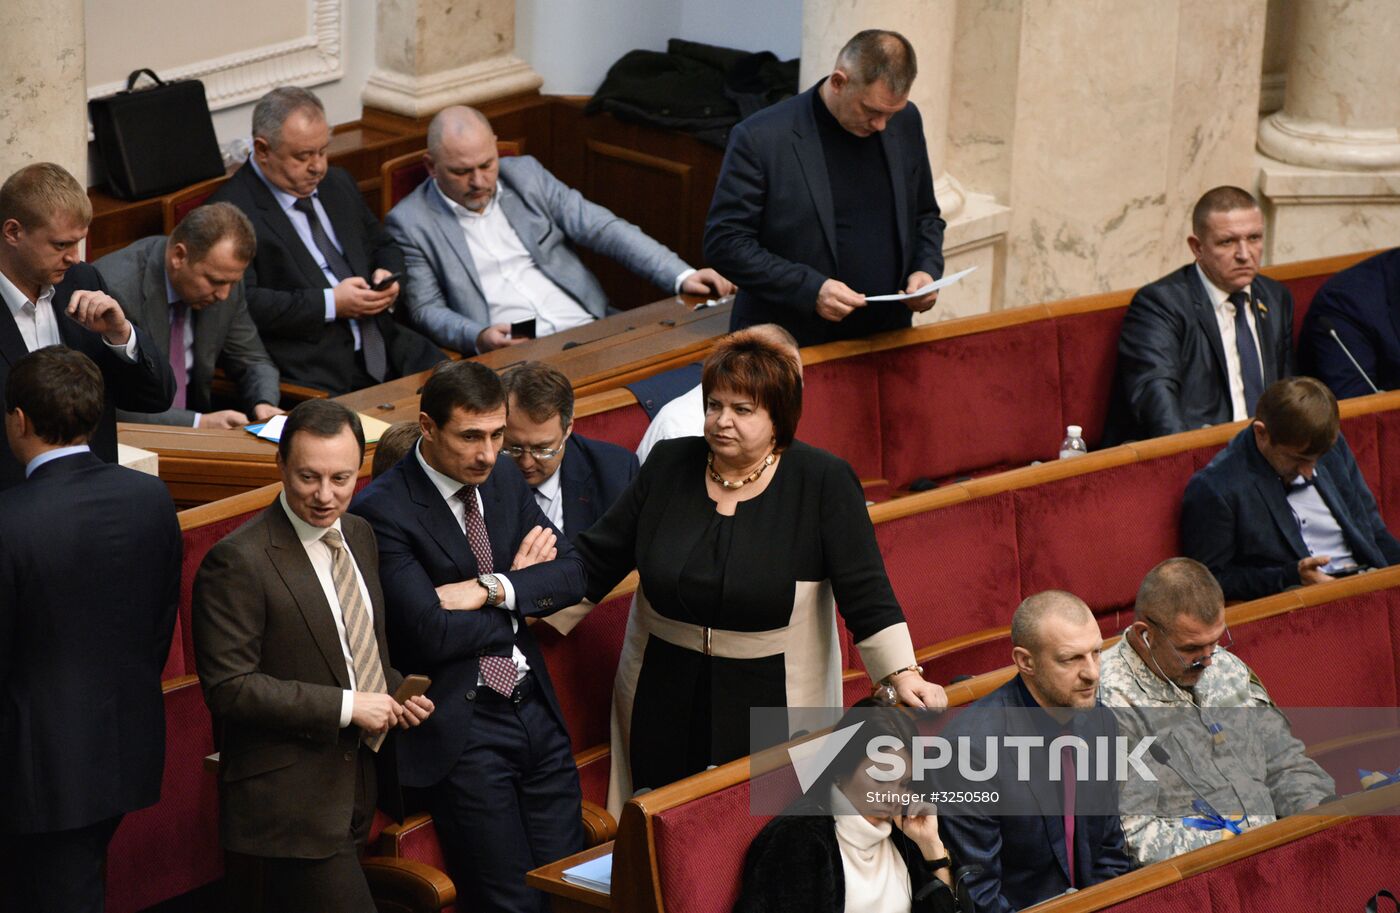 Ukraine's Verkhovna Rada holds session